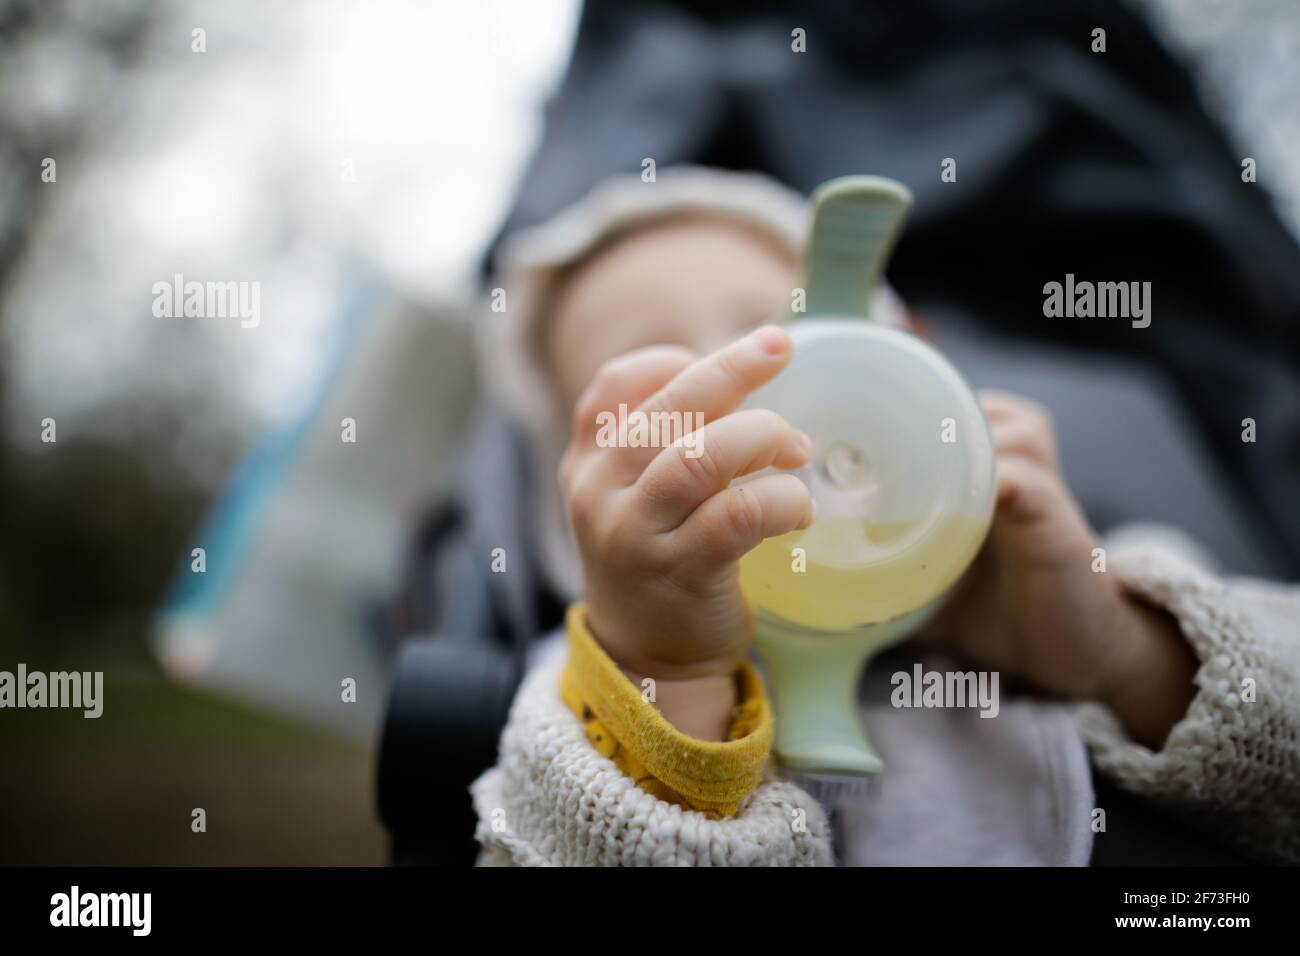 Immagine della profondità di campo bassa (messa a fuoco selettiva) con le mani di un bambino che tiene un biberon. Foto Stock